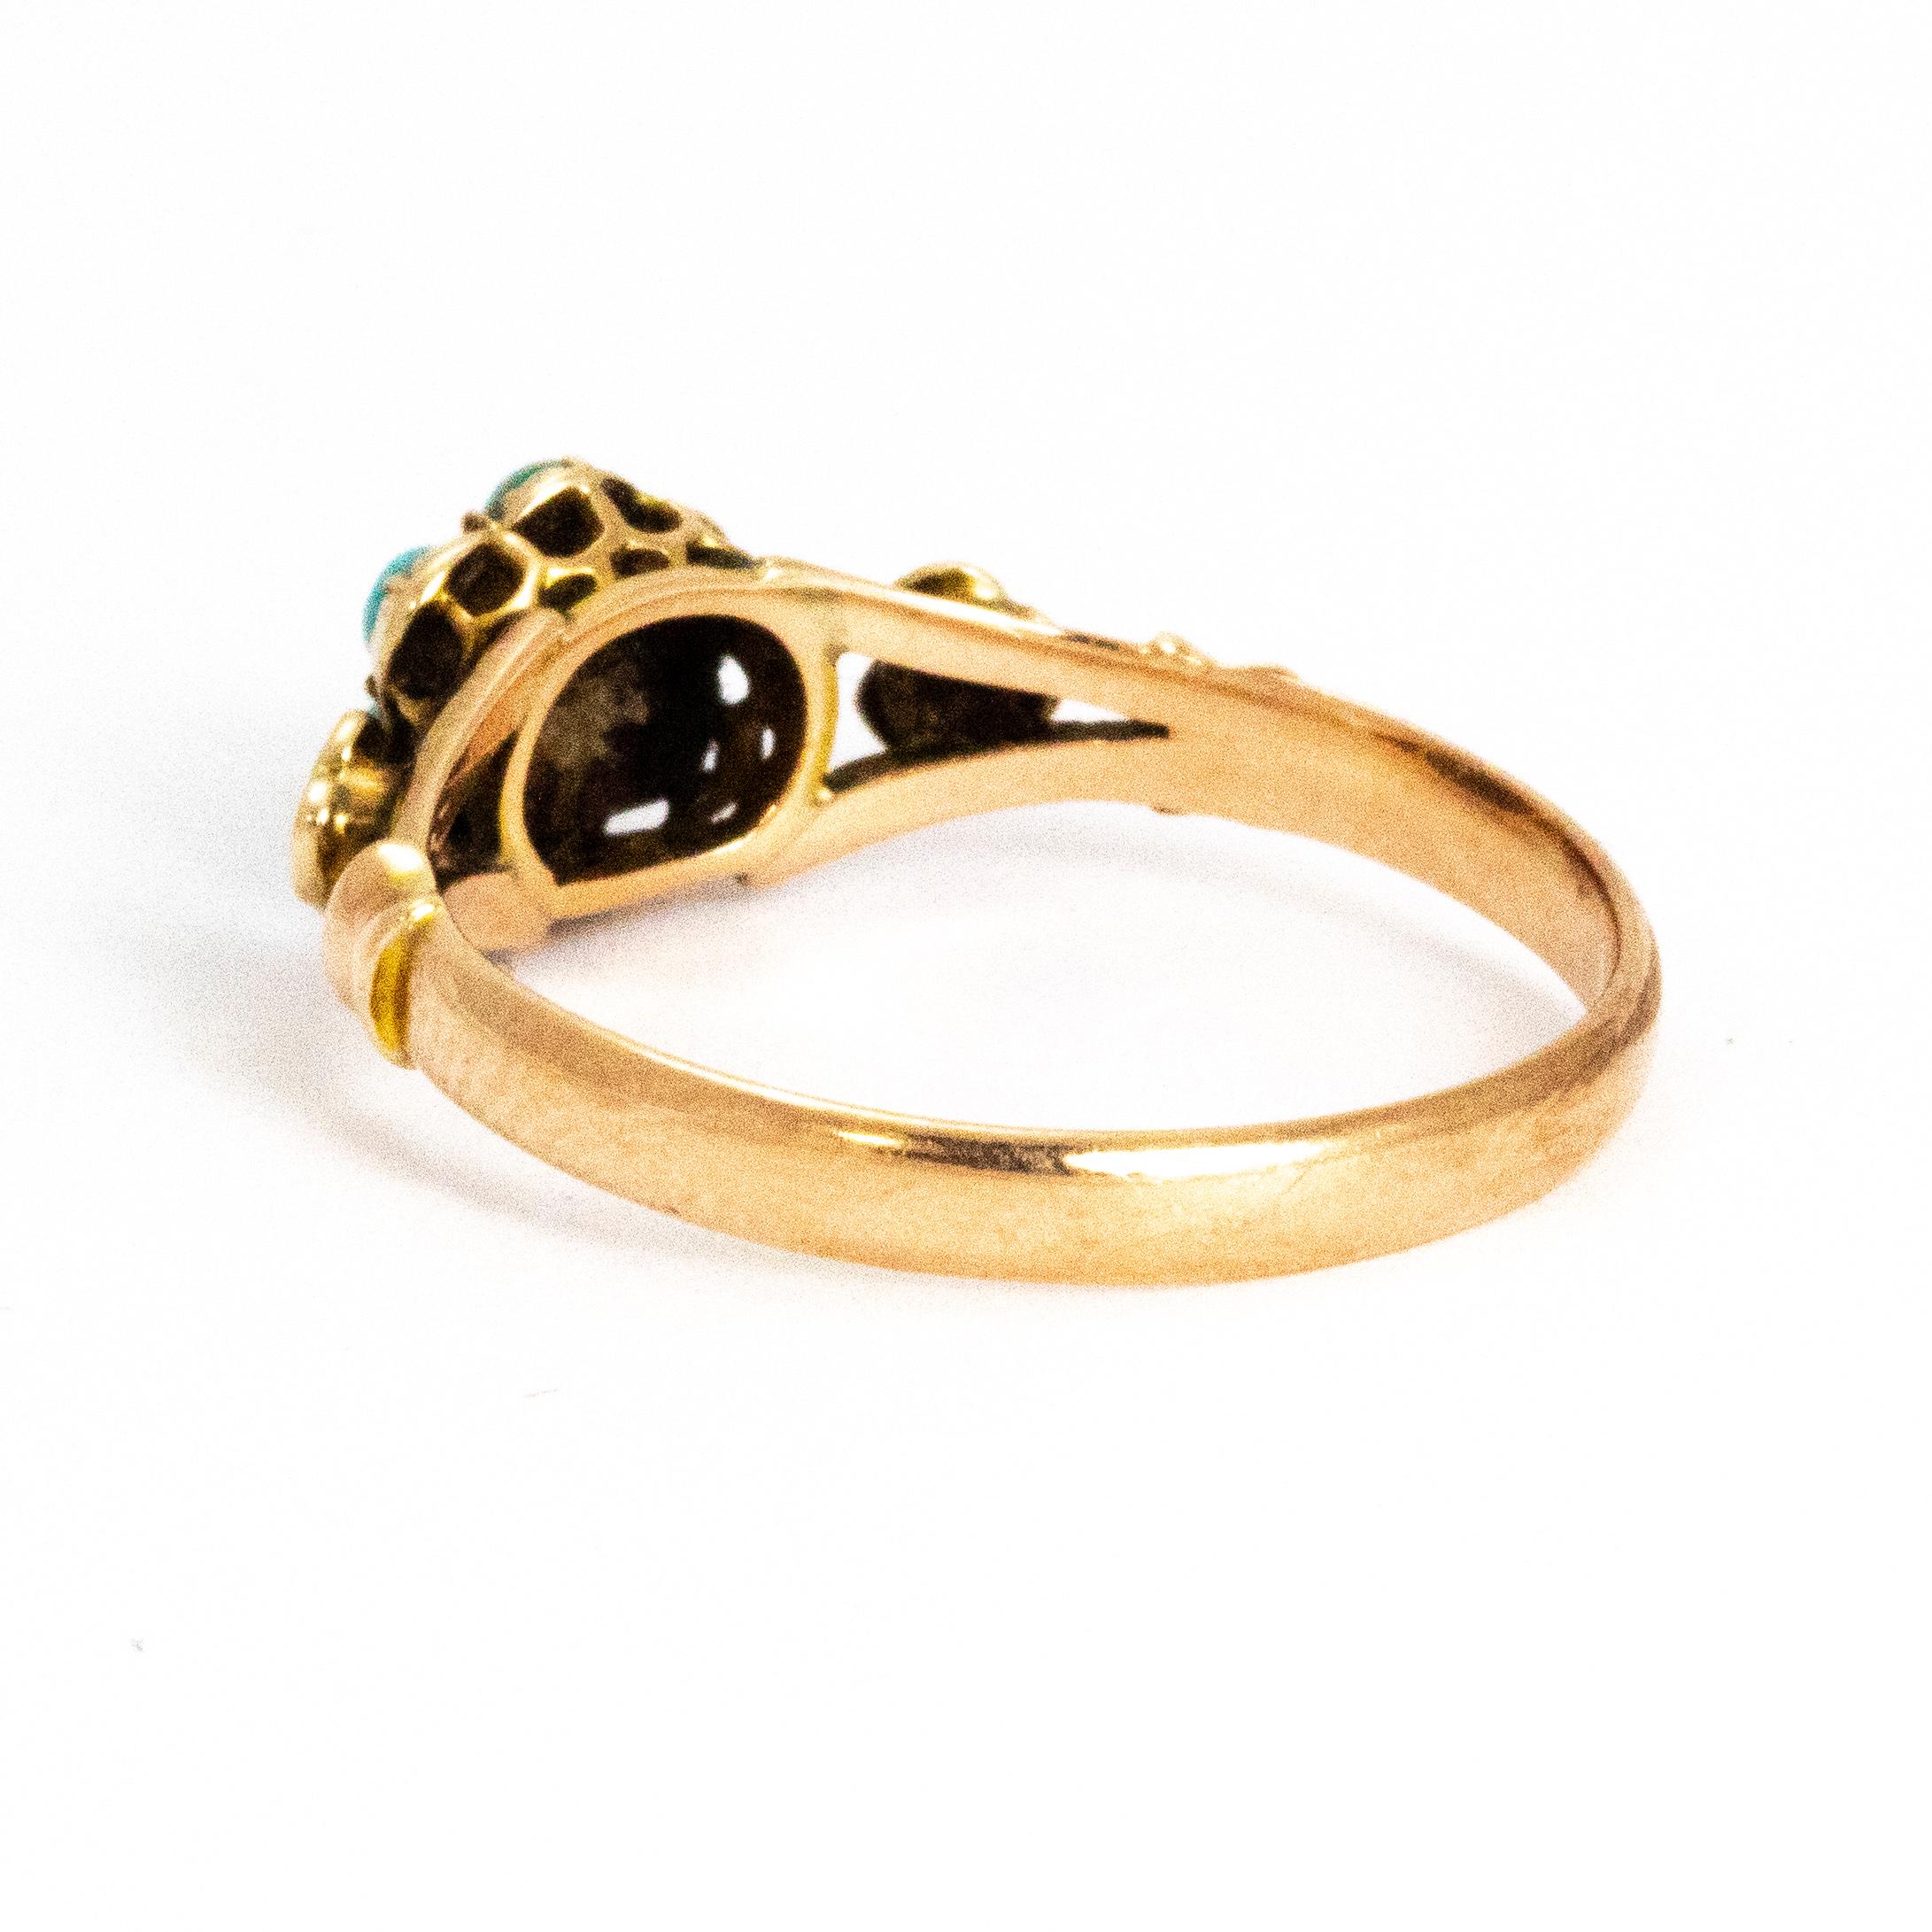 15 karat gold ring